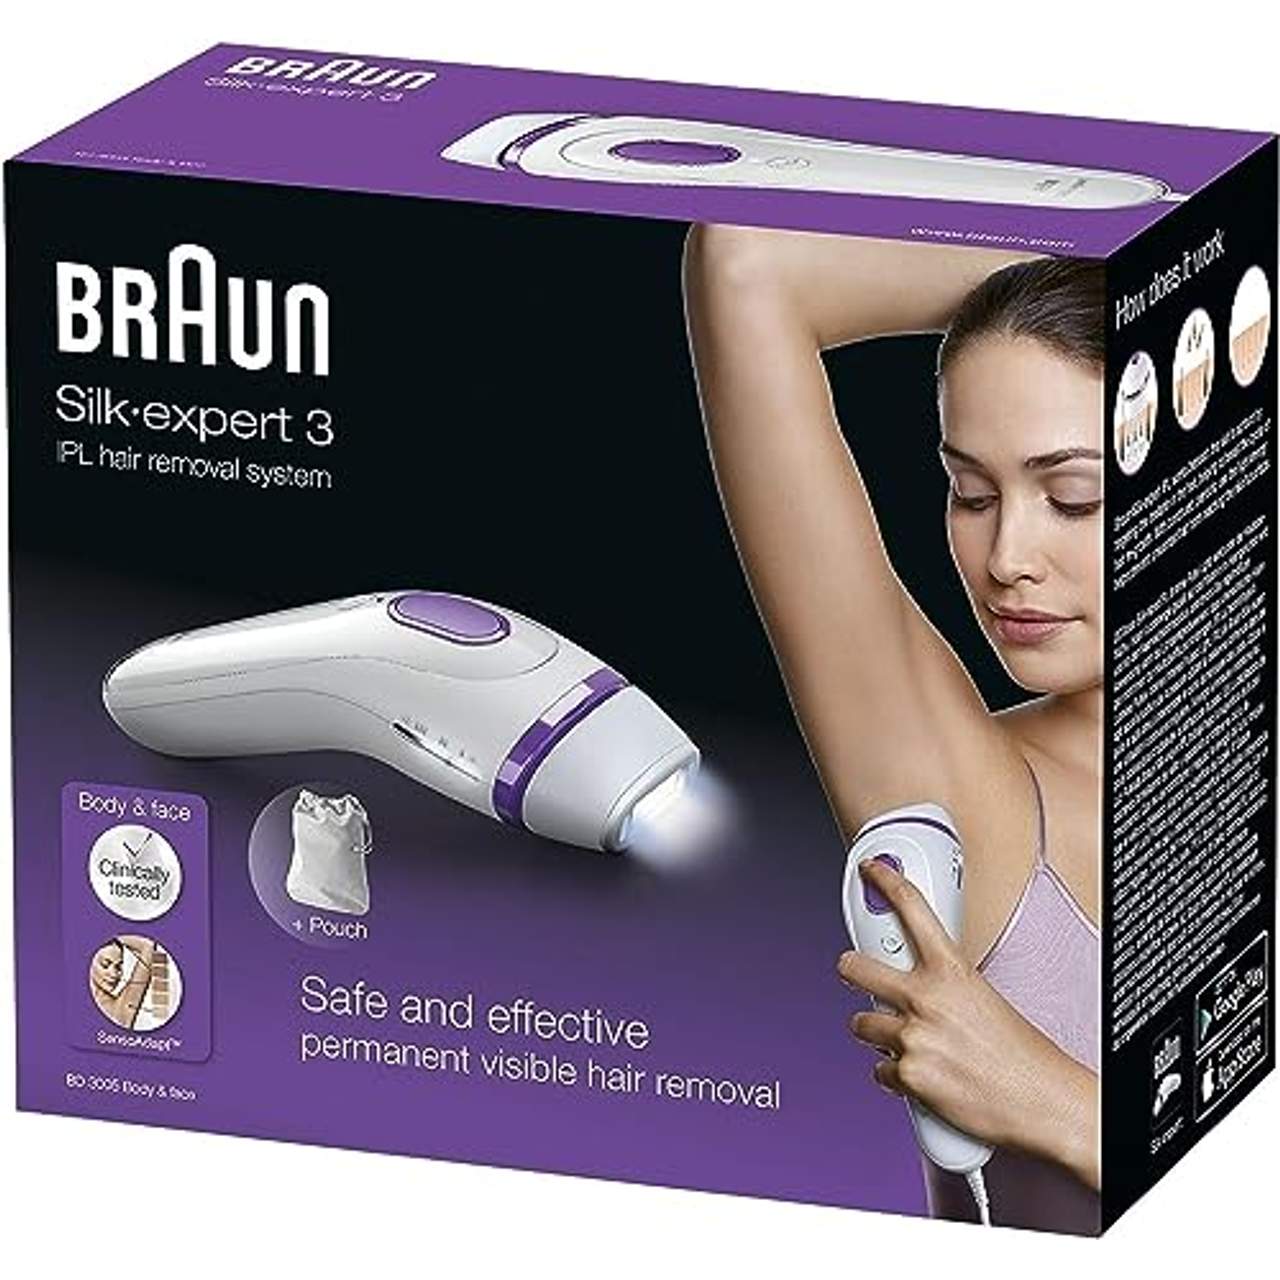 Braun Silk-expert 3 BD 3005